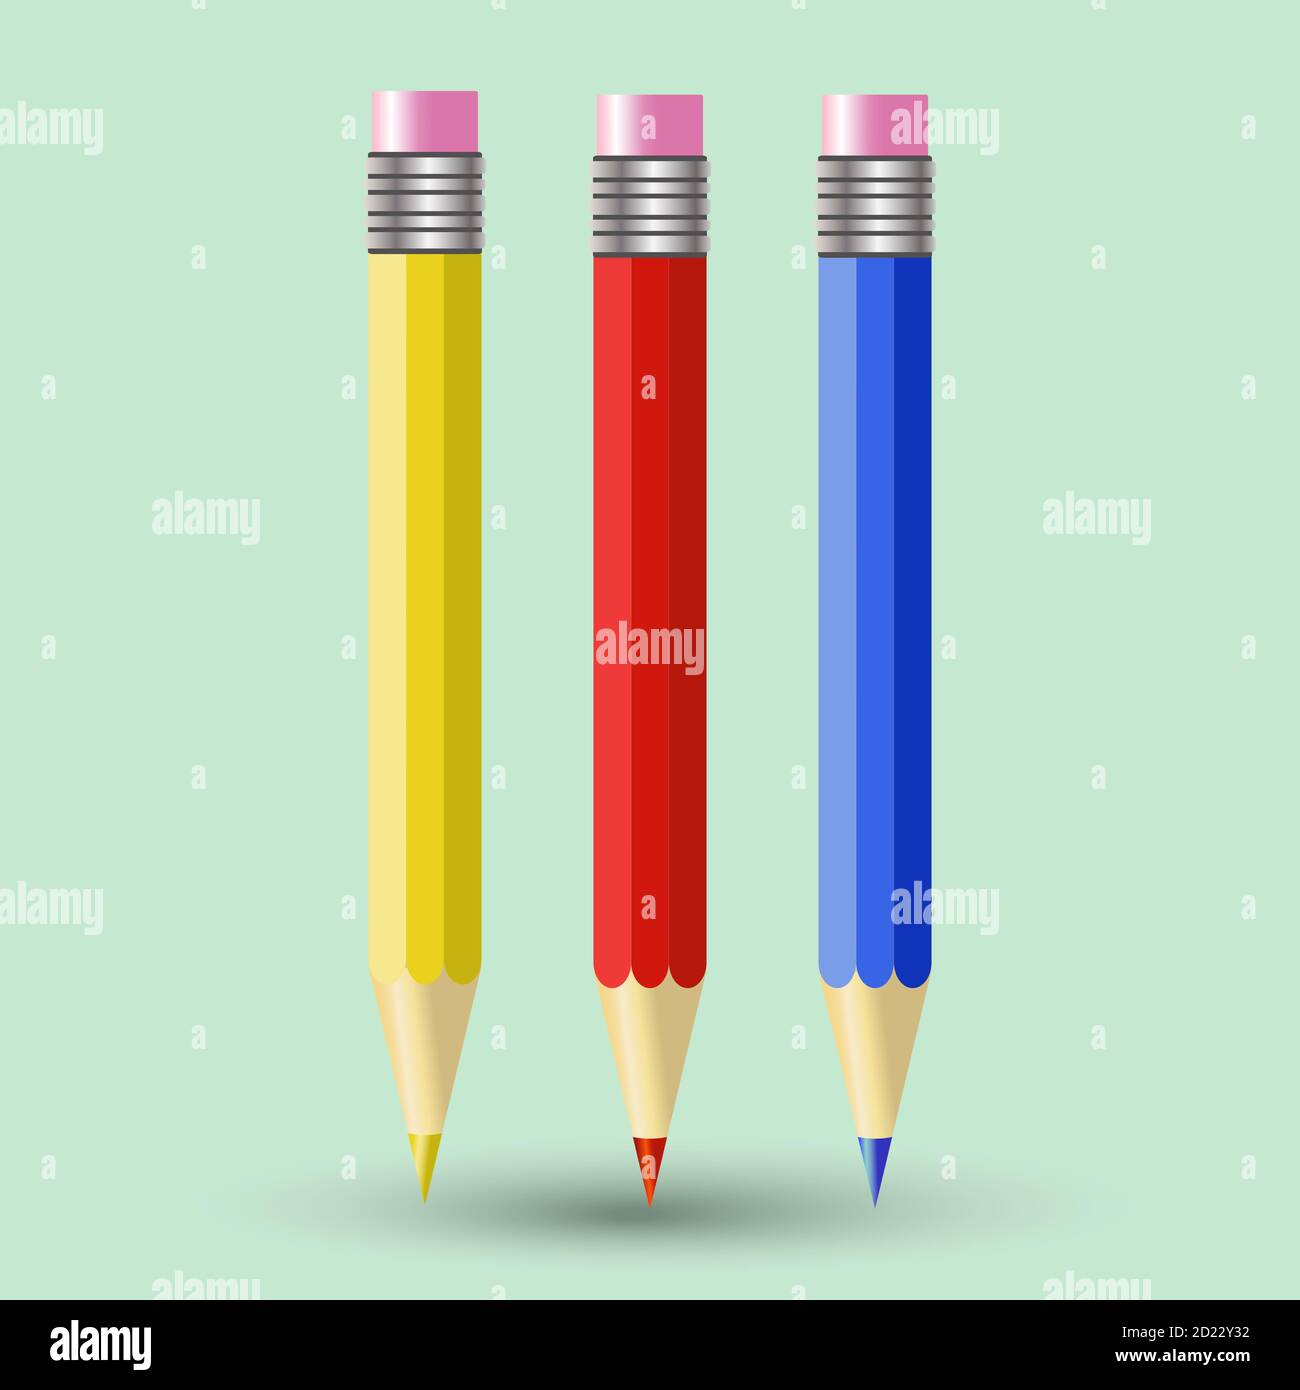 Vektor-Set von drei bunten Bleistiften - rot, blau und gelb, mit einem Gummiband auf der Oberseite. Isoliert auf hellgrünem Hintergrund. Bleistiftsymbol Stock Vektor